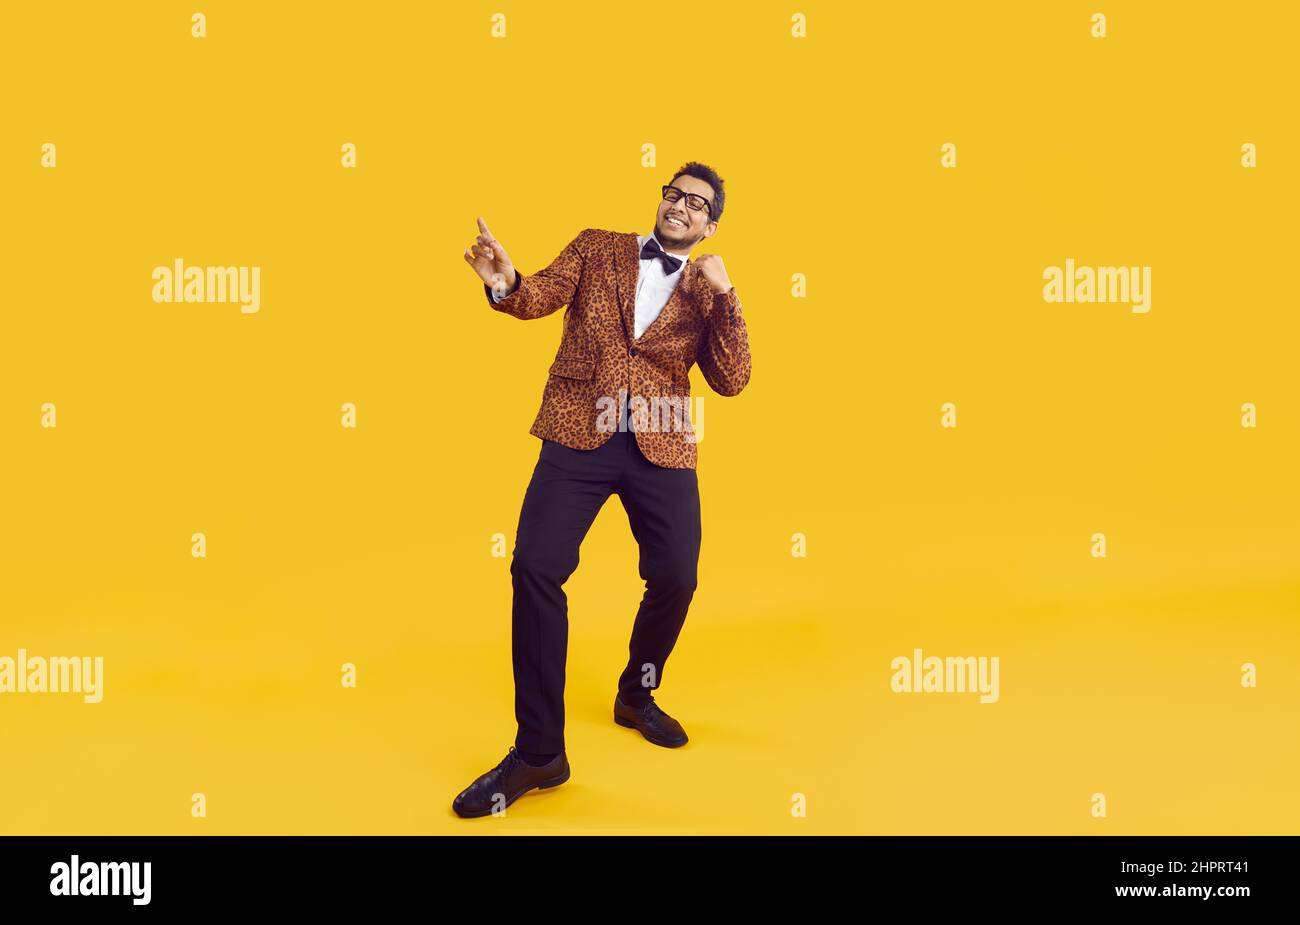 Felice allegro ragazzo nero giovane in giacca da festa ballando isolato su sfondo giallo Foto Stock